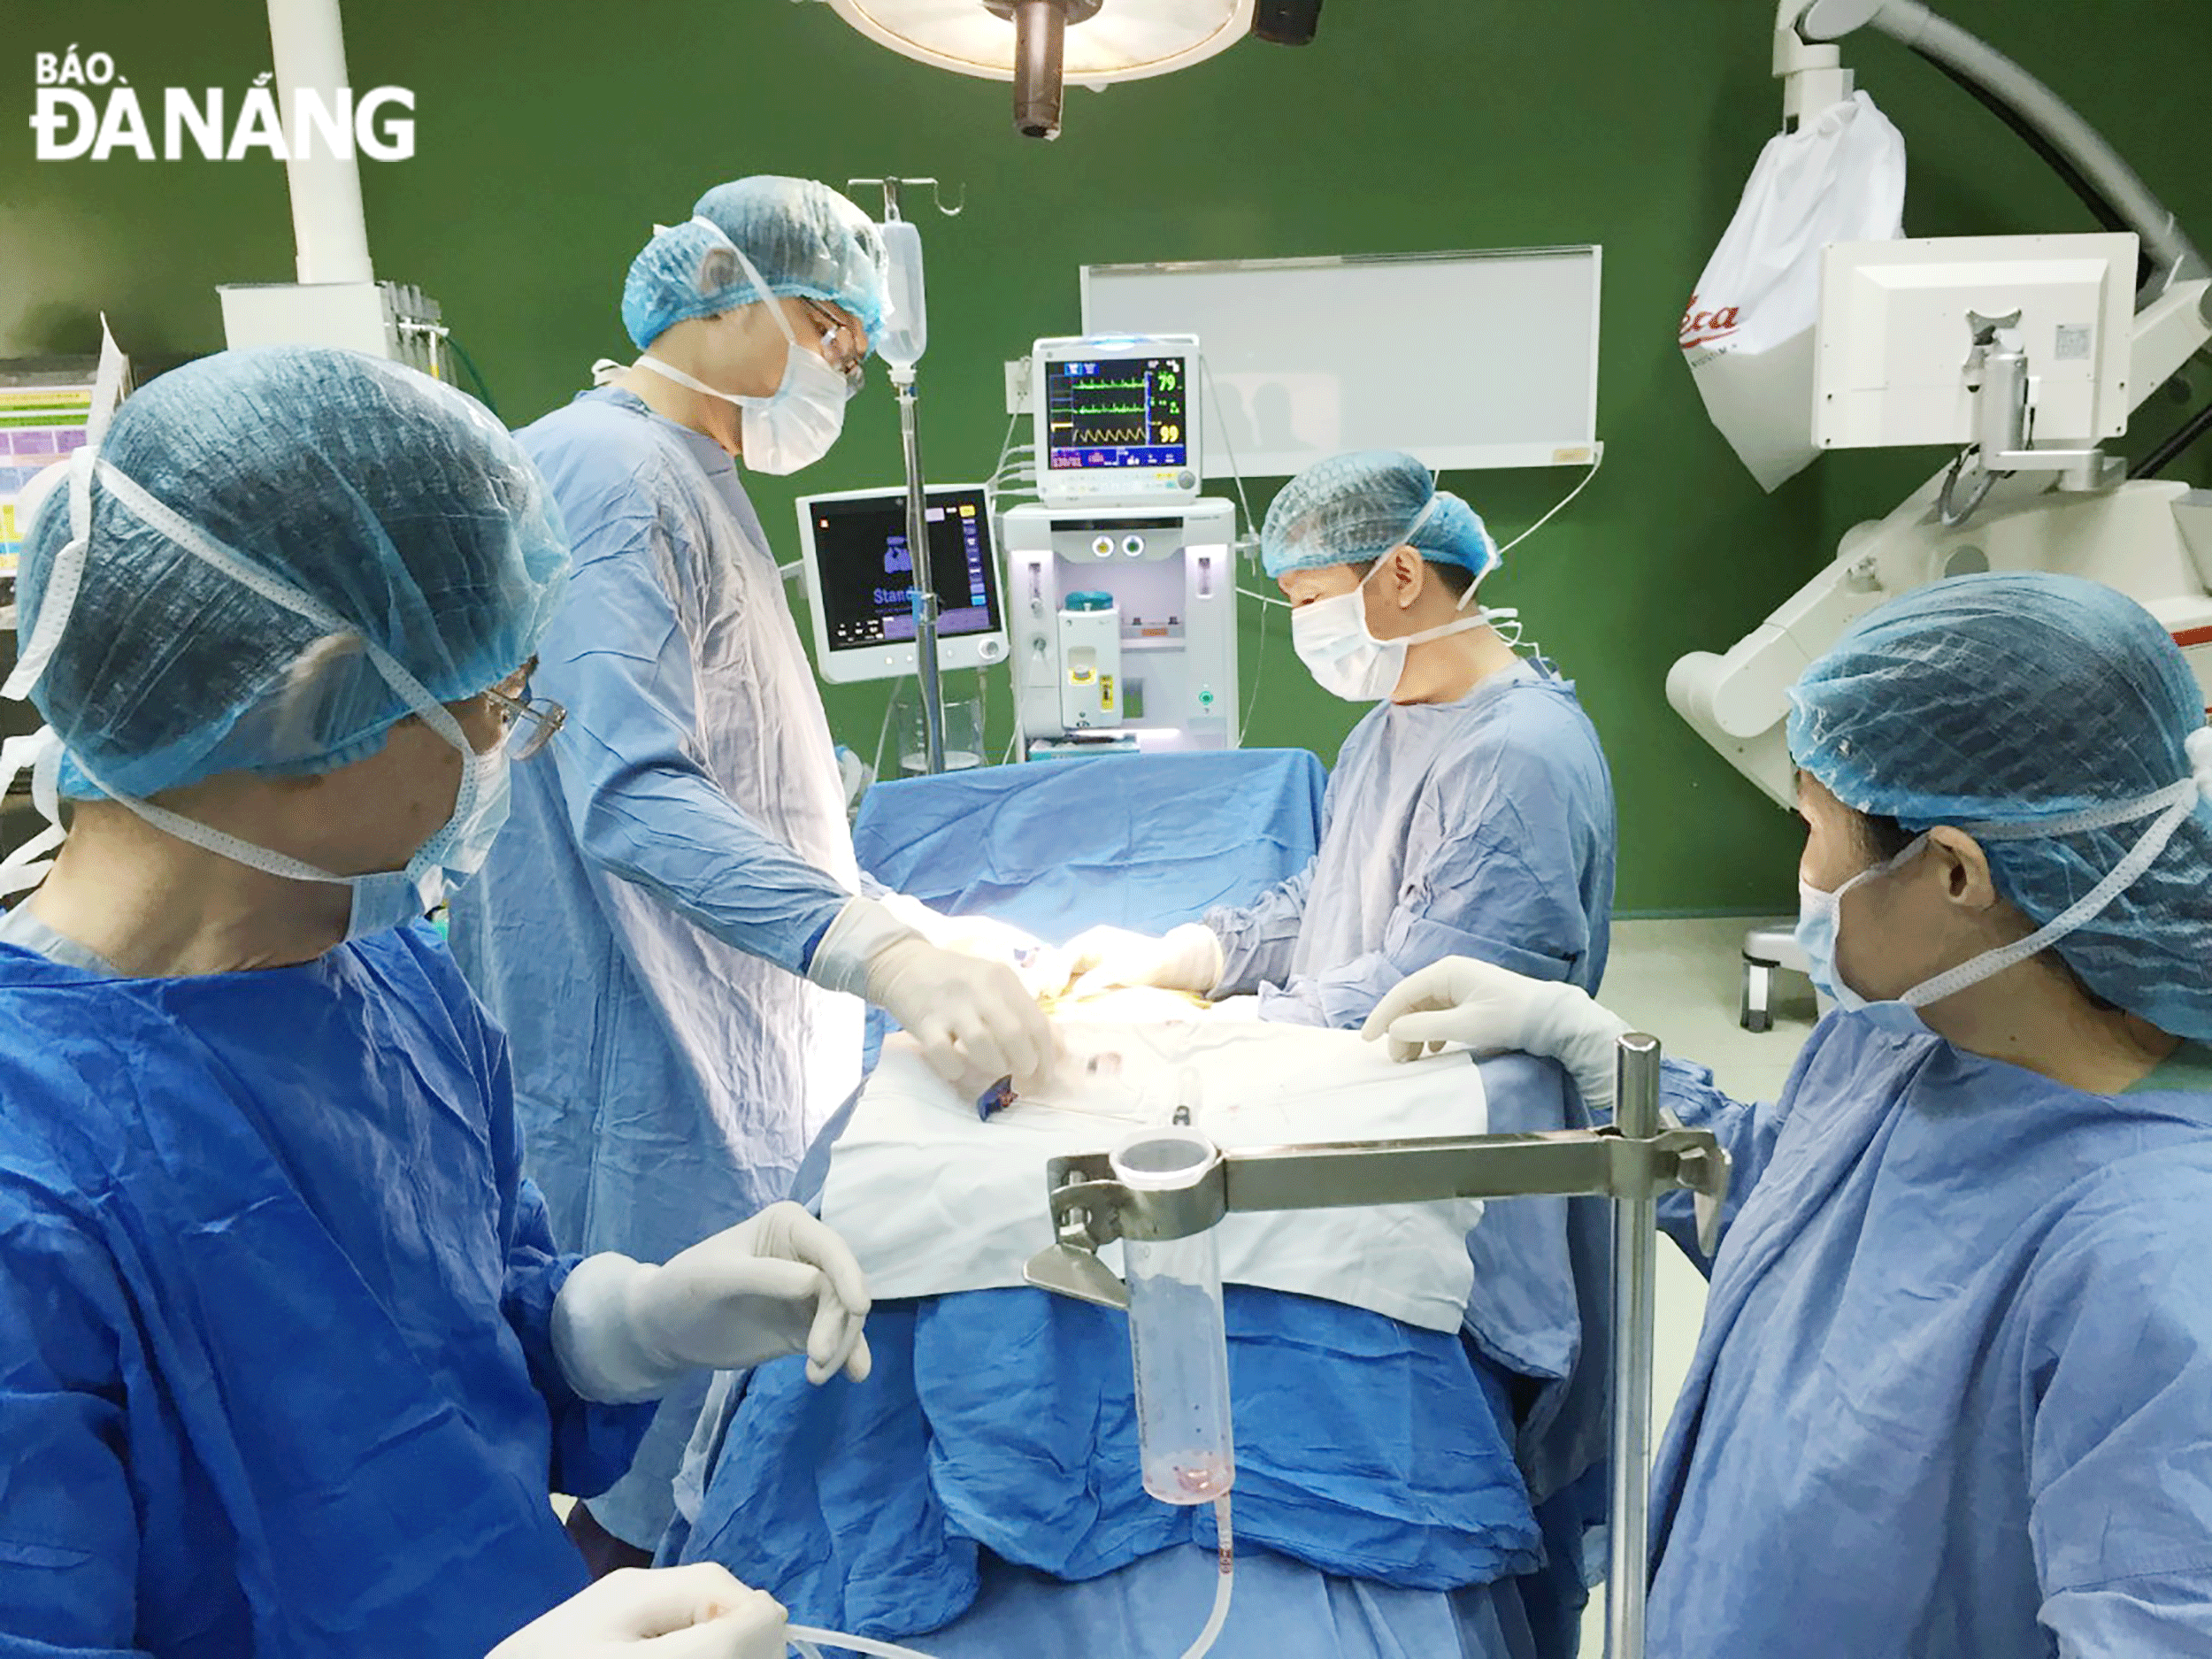 Bệnh viện Đà Nẵng triển khai kỹ thuật chuyên sâu, phẫu thuật chấn thương tủy sống cho bệnh nhân. Ảnh: PHAN CHUNG